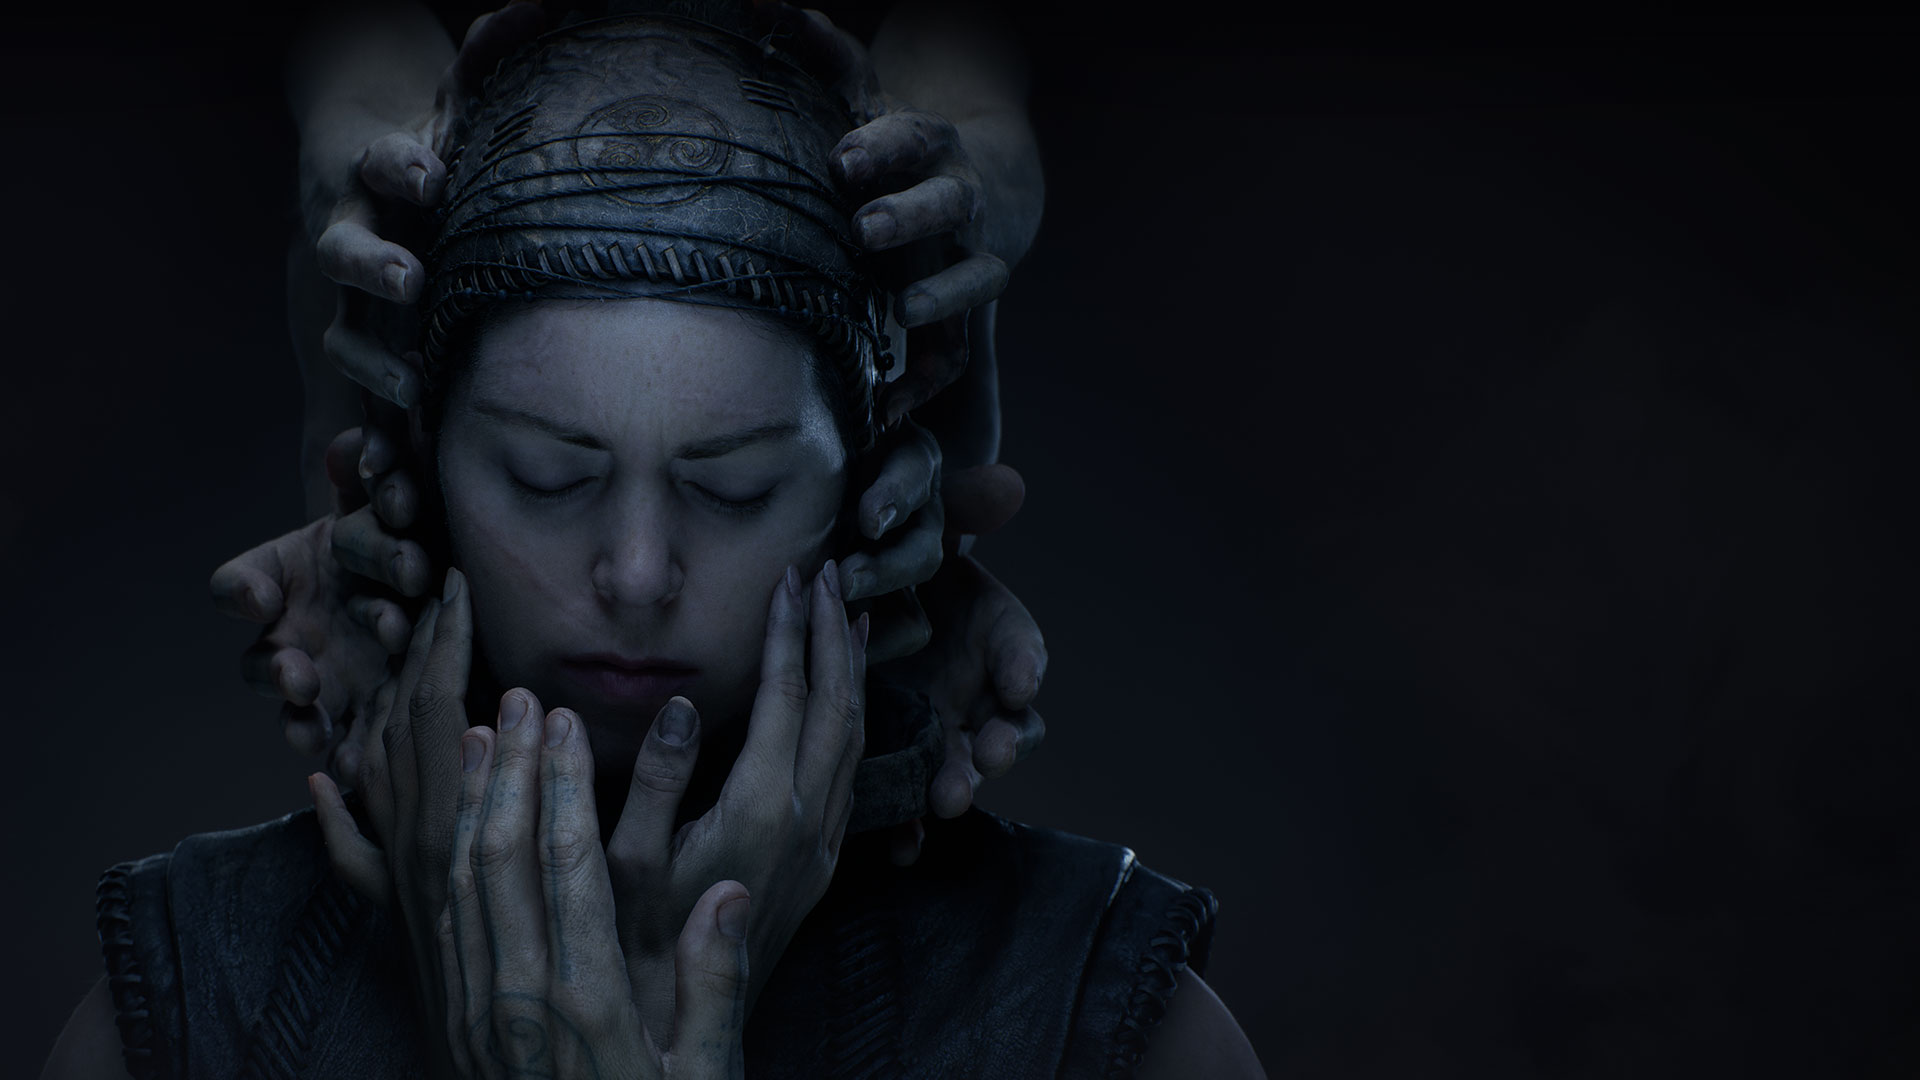 Uma mulher com roupas de couro feitas à mão fecha os olhos na escuridão enquanto as mãos se estendem para tocar seu rosto.